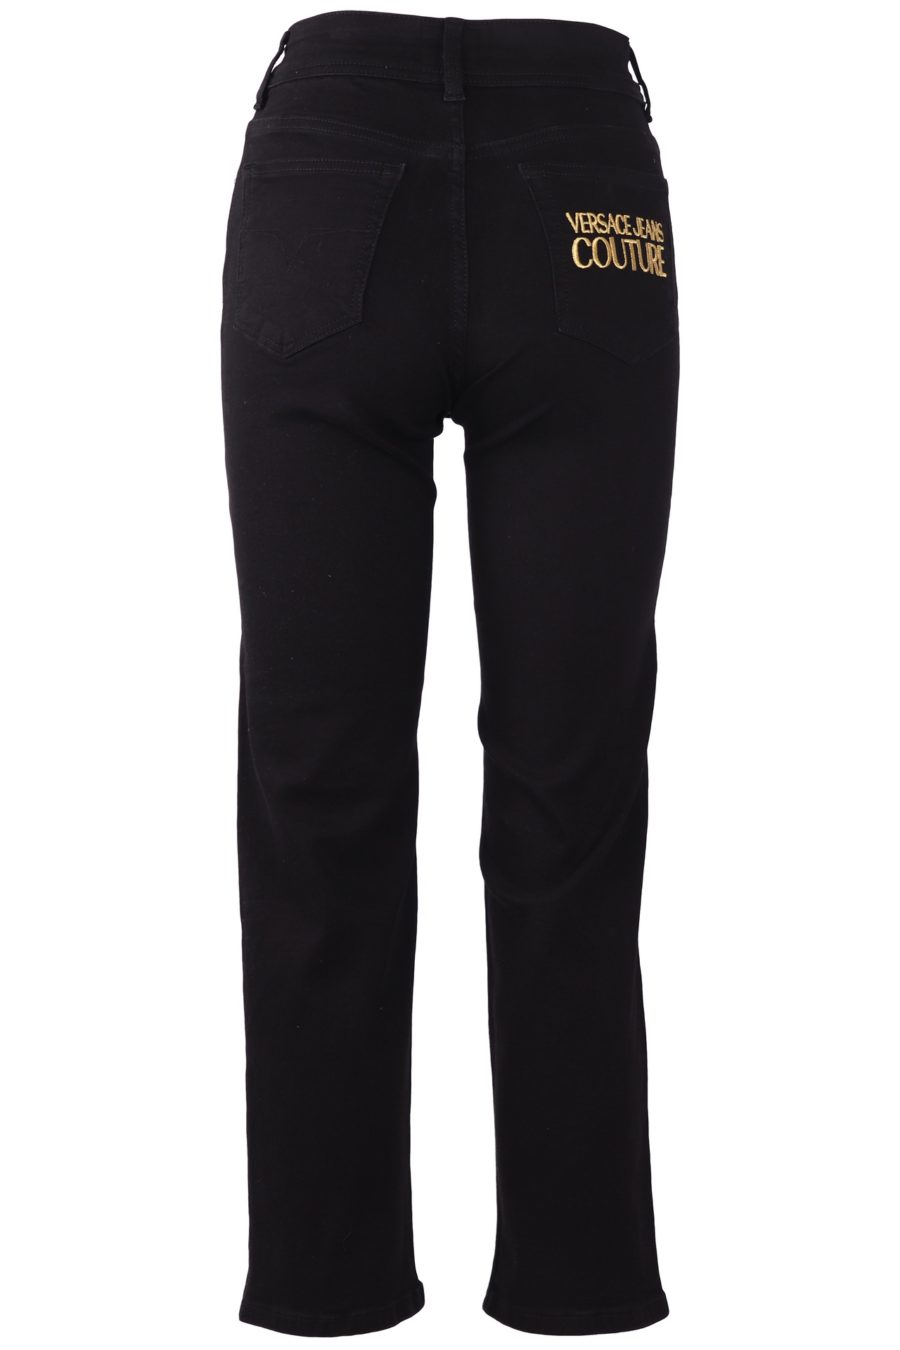 Vaquero Versace Jeans Couture negro básico - 4b65cd90034b0e10eb01367ba4612d291510b17a